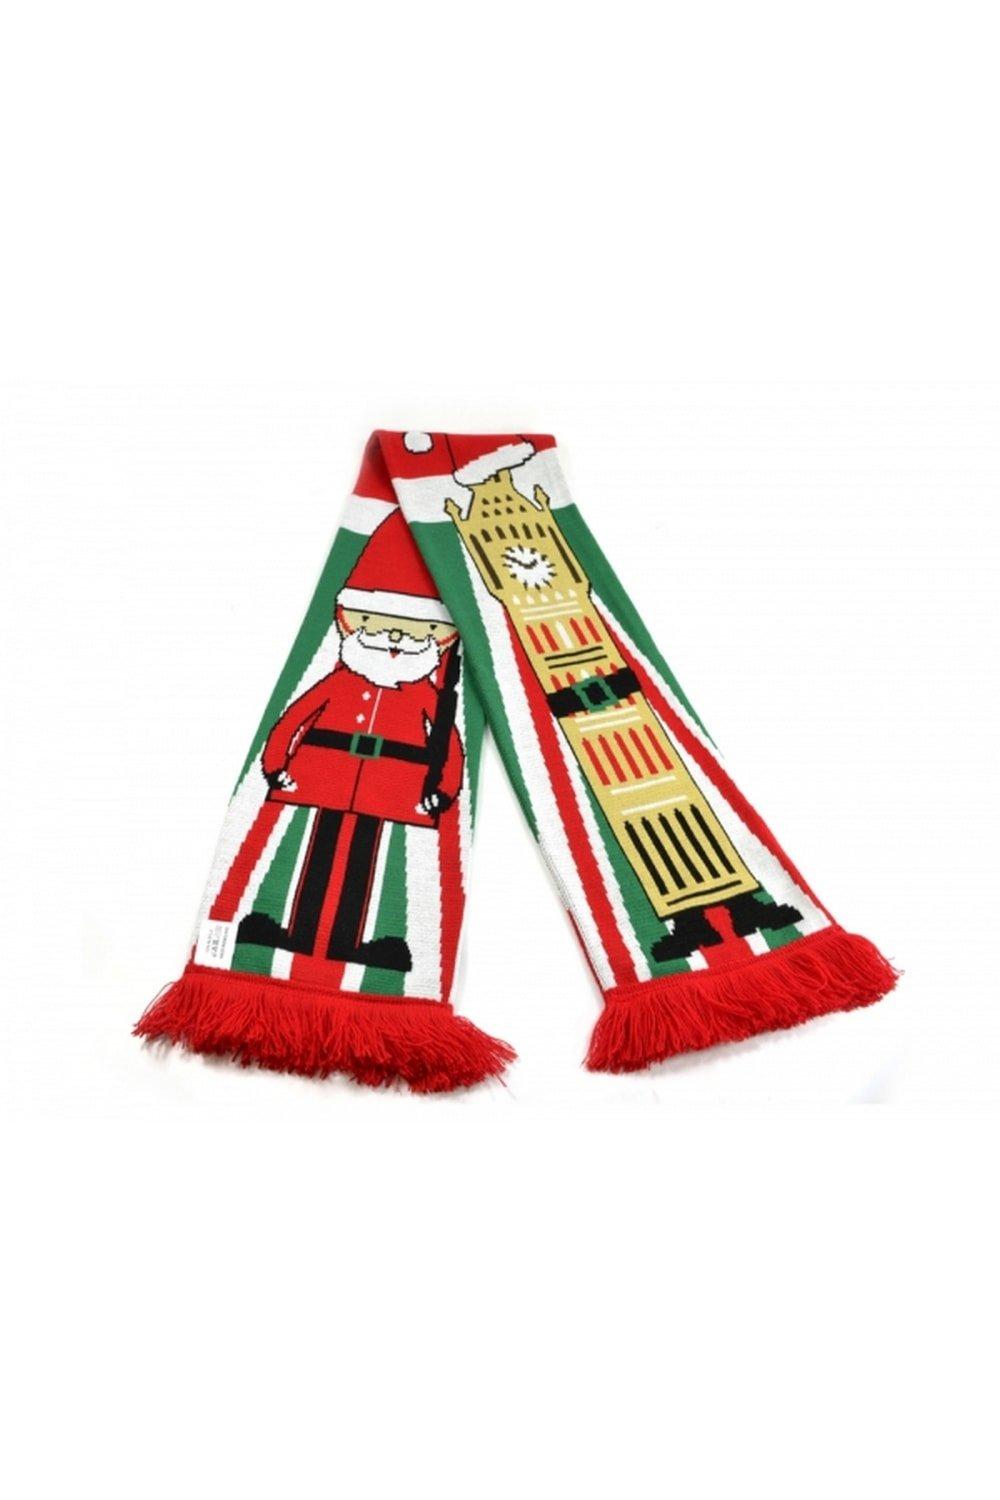 Рождественский шарф Биг-Бен Universal Textiles, мультиколор jnby бирюзовый жаккардовый шарф jnby